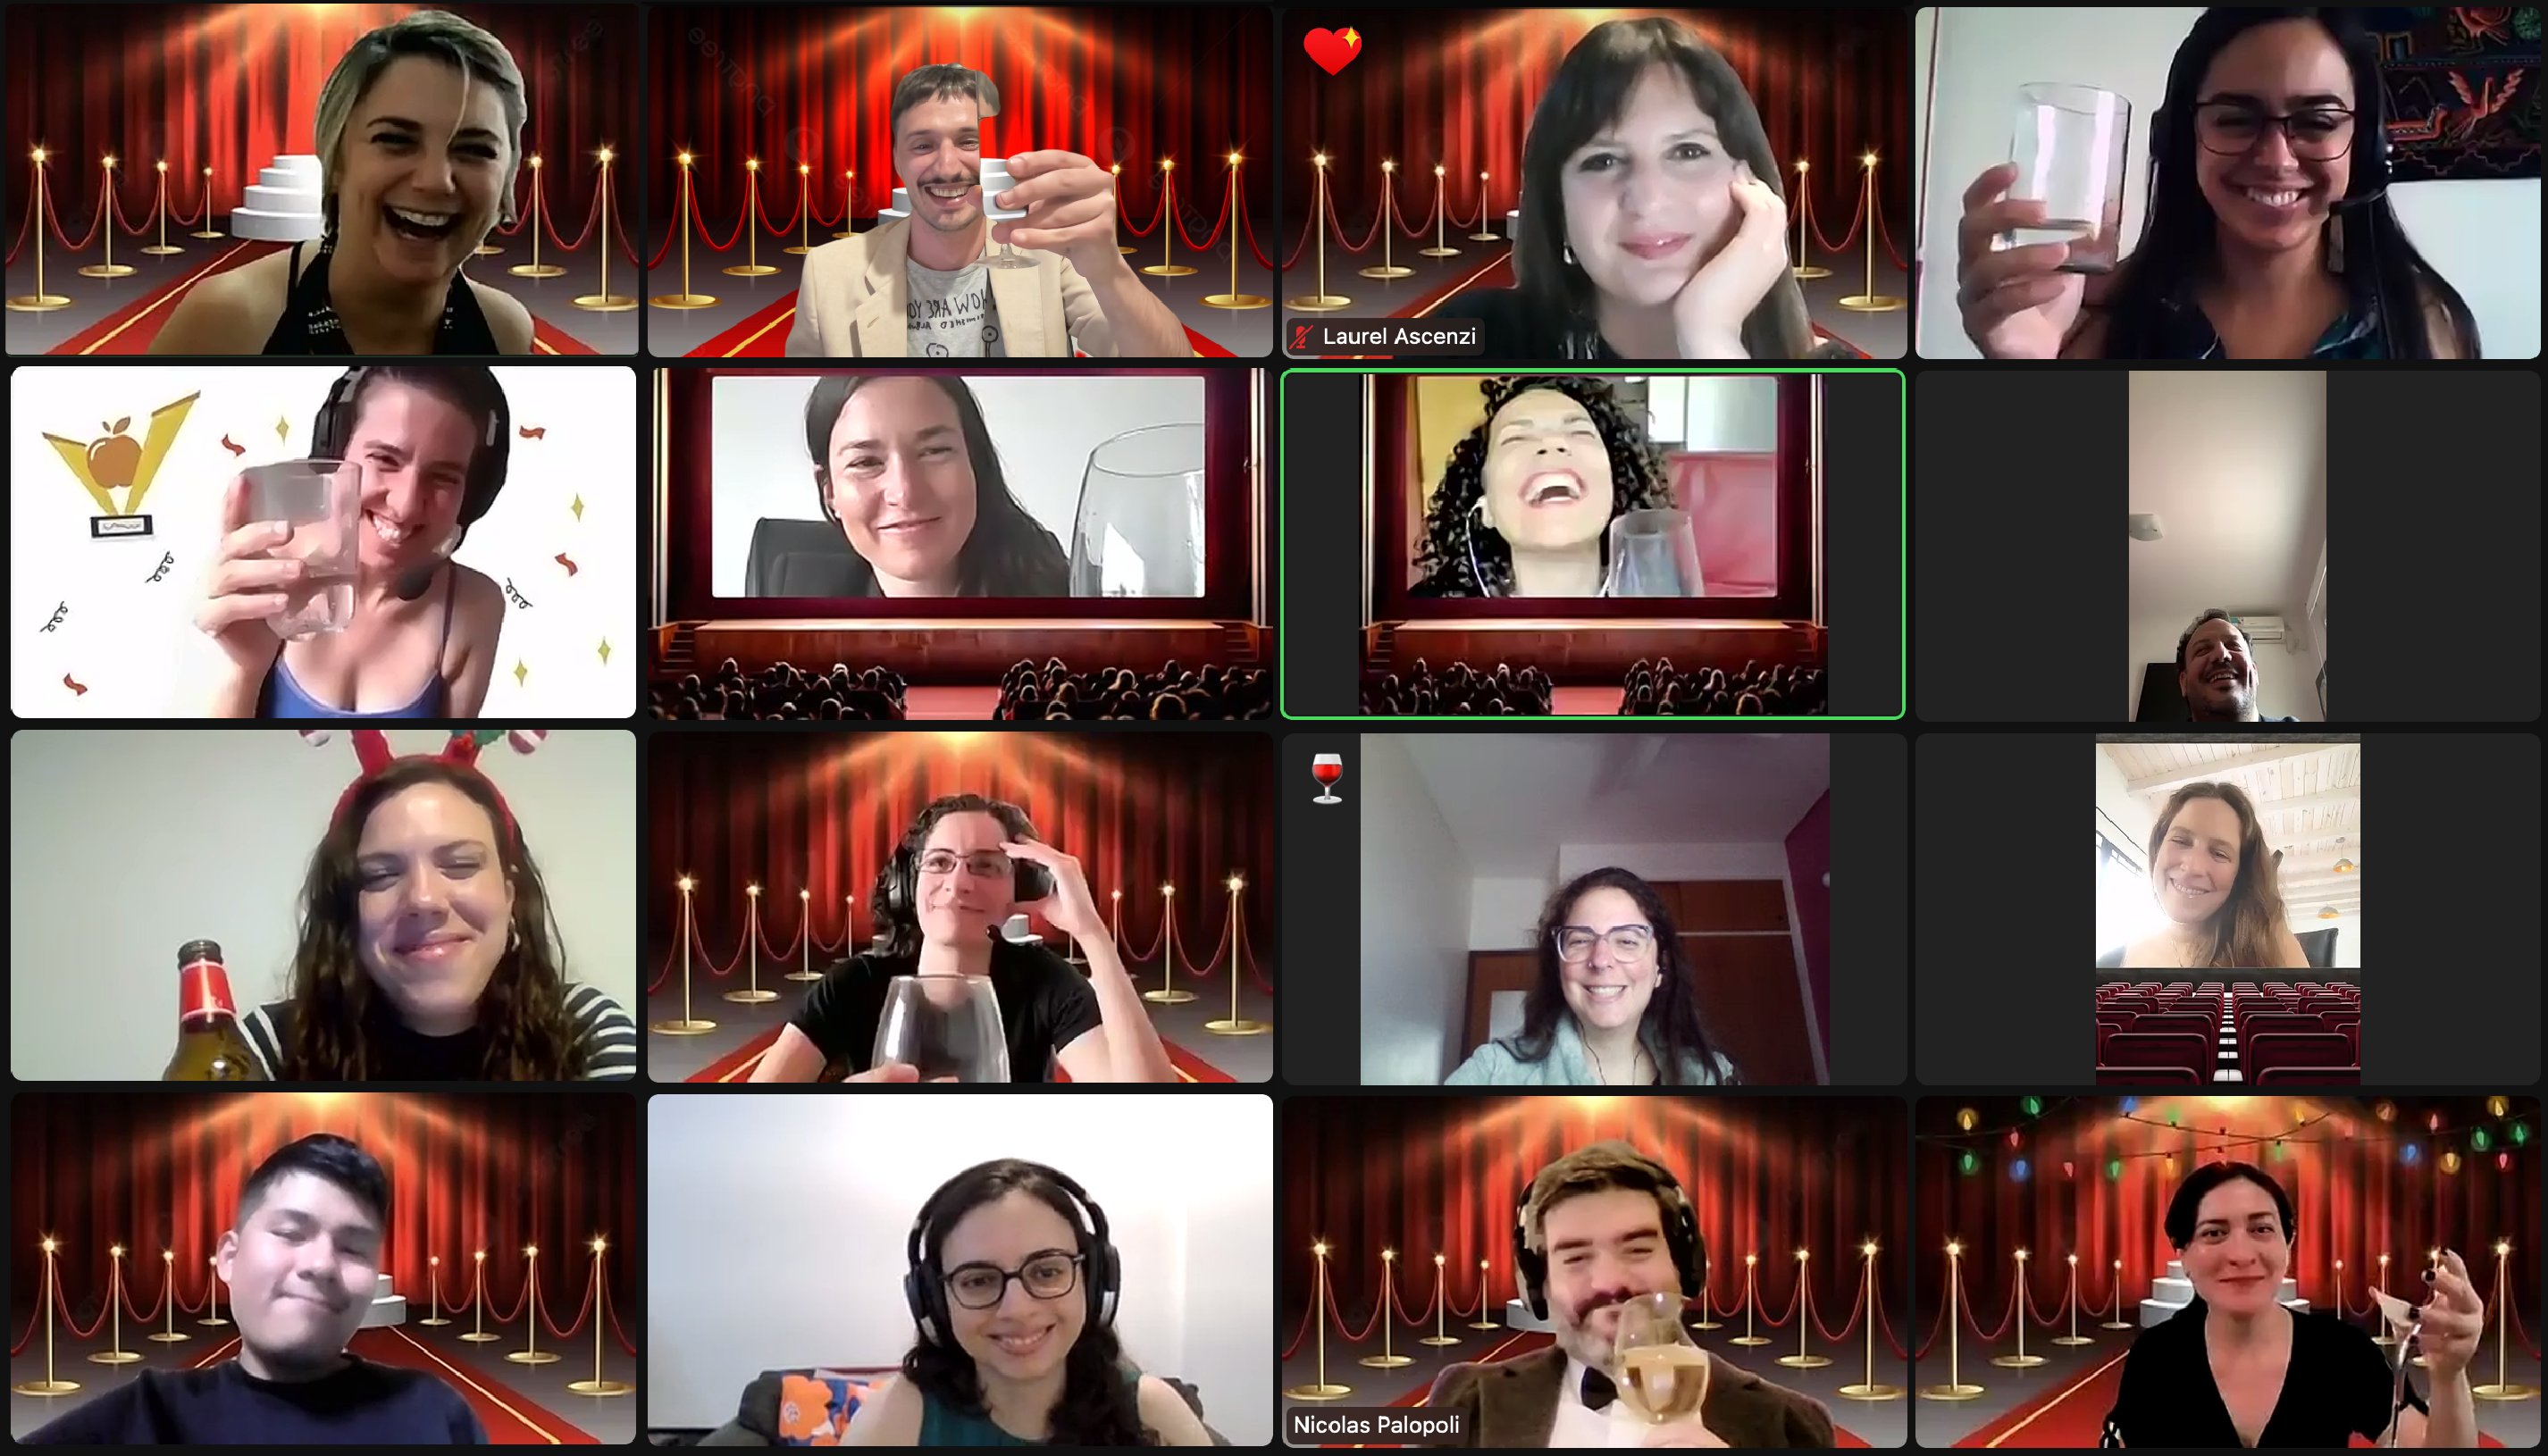 Captura de pantalla de la reunión virtual en la que entregamos los Premios Manzanita. Se ve al equipo vestido de manera elegante, brindando y sonrientes.